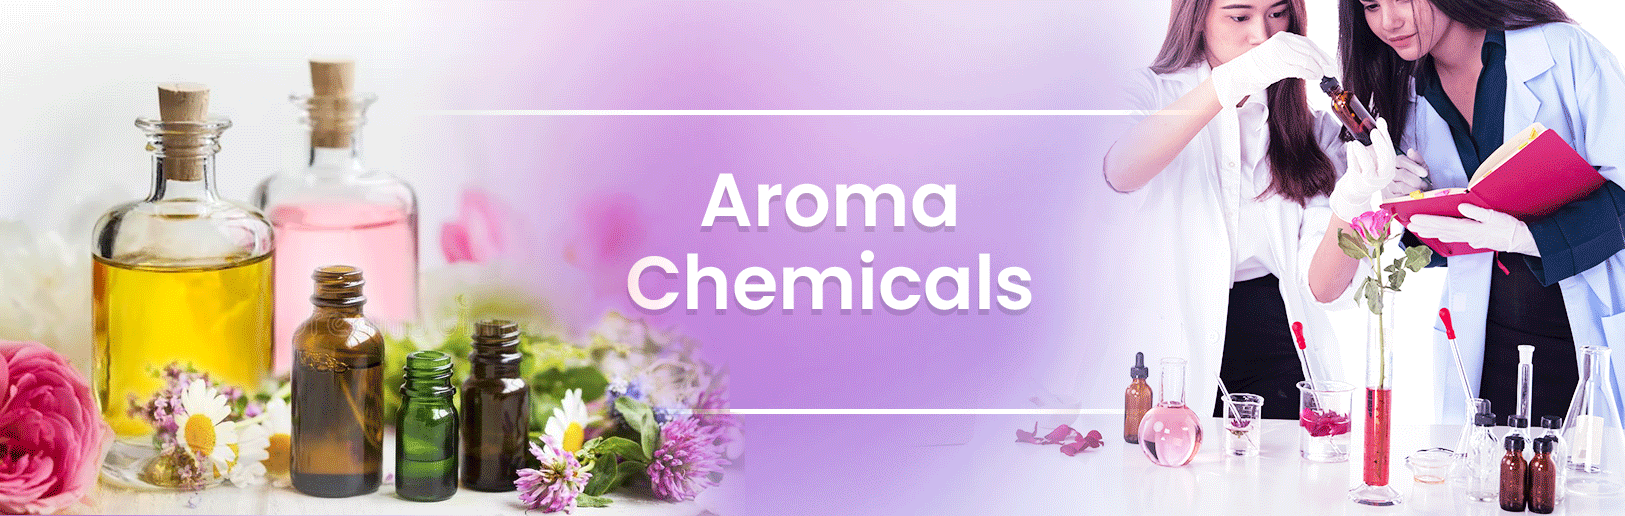 ส่วนประกอบ Aroma Chemicals